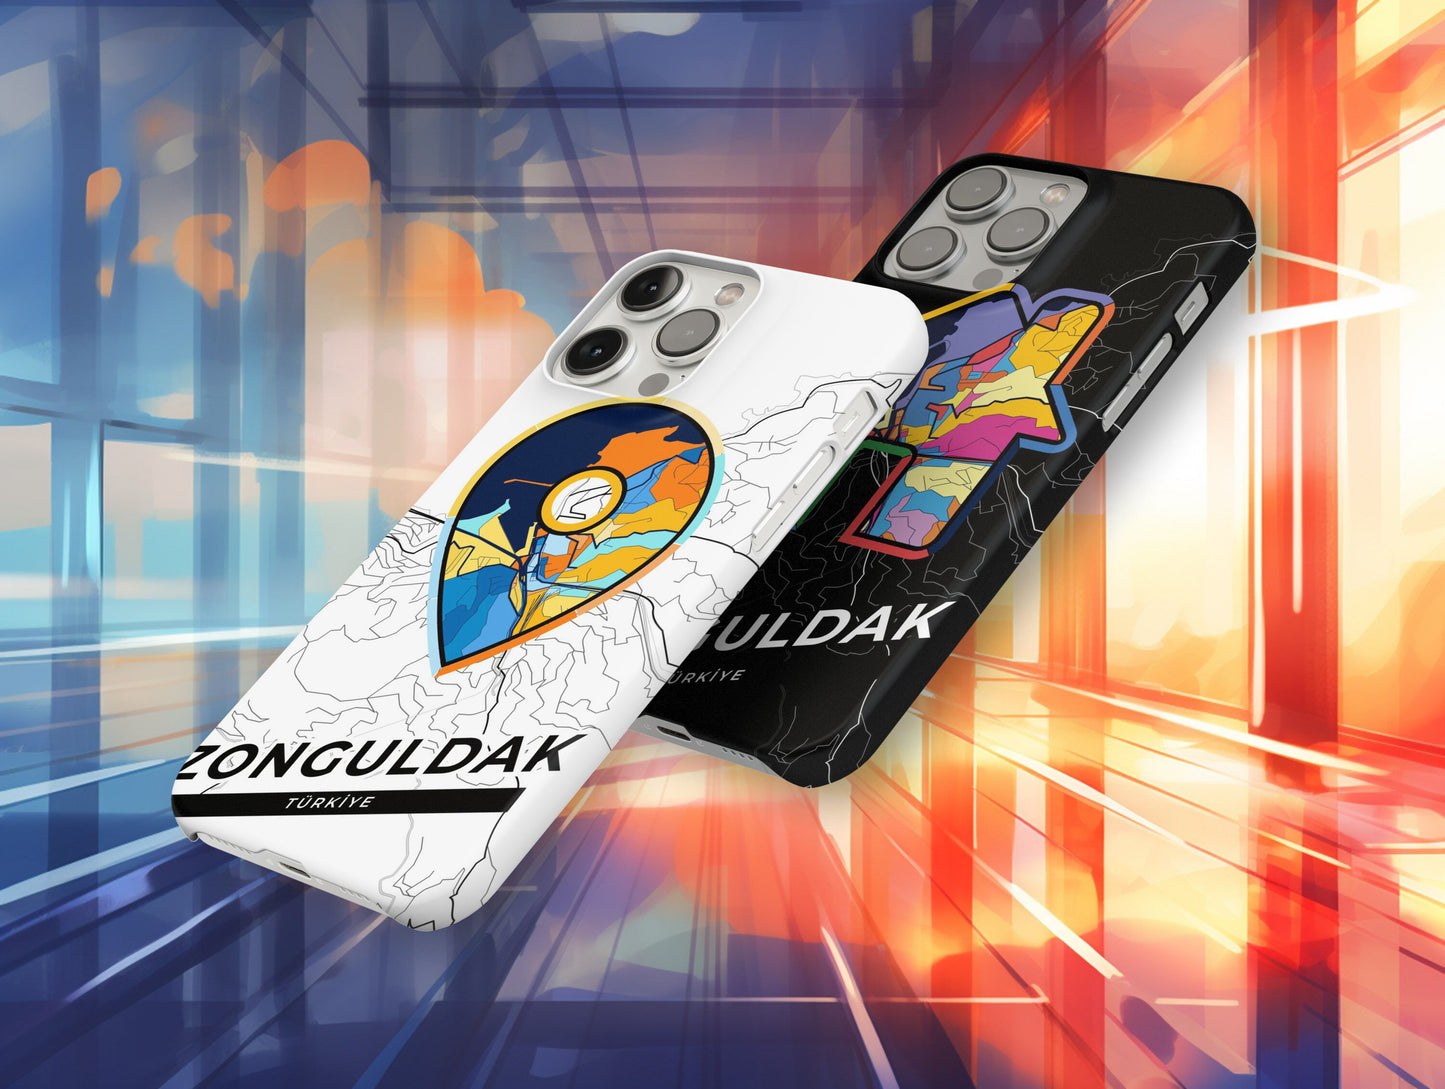 Zonguldak Turkey slim phone case with colorful icon